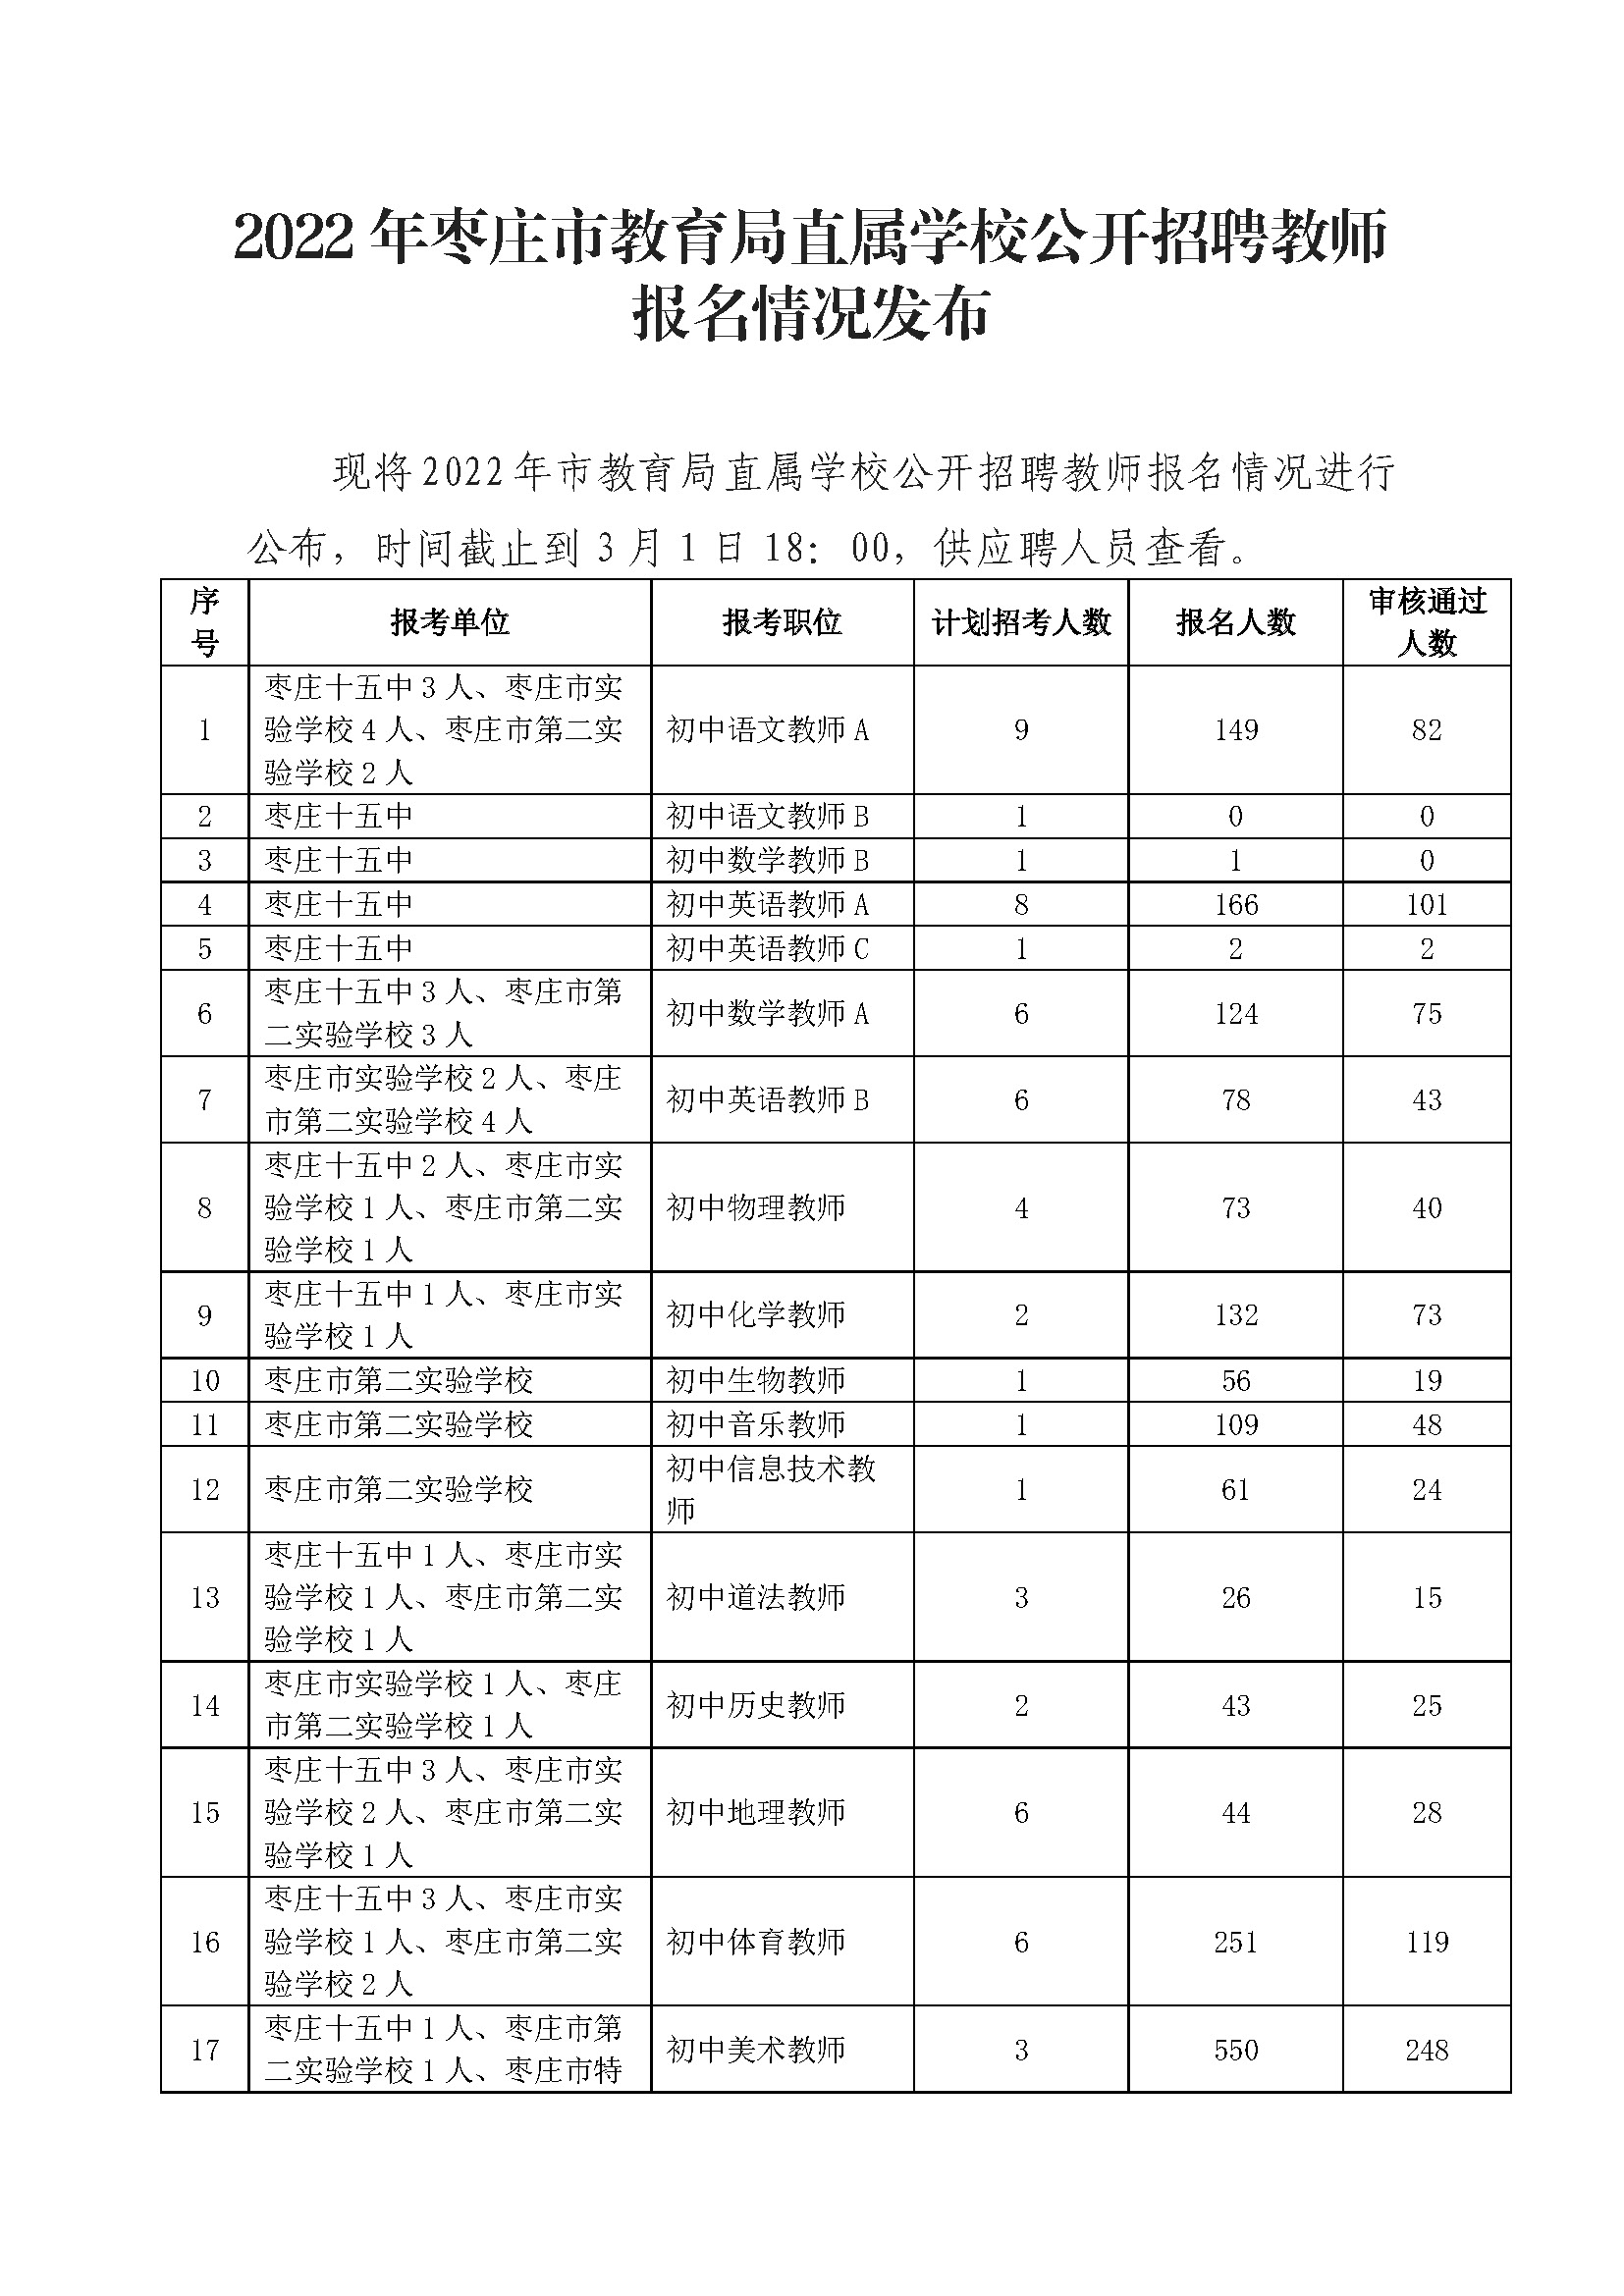 2022年枣庄市教育局直属学校公开招聘教师报名情况发布_页面_1.jpg